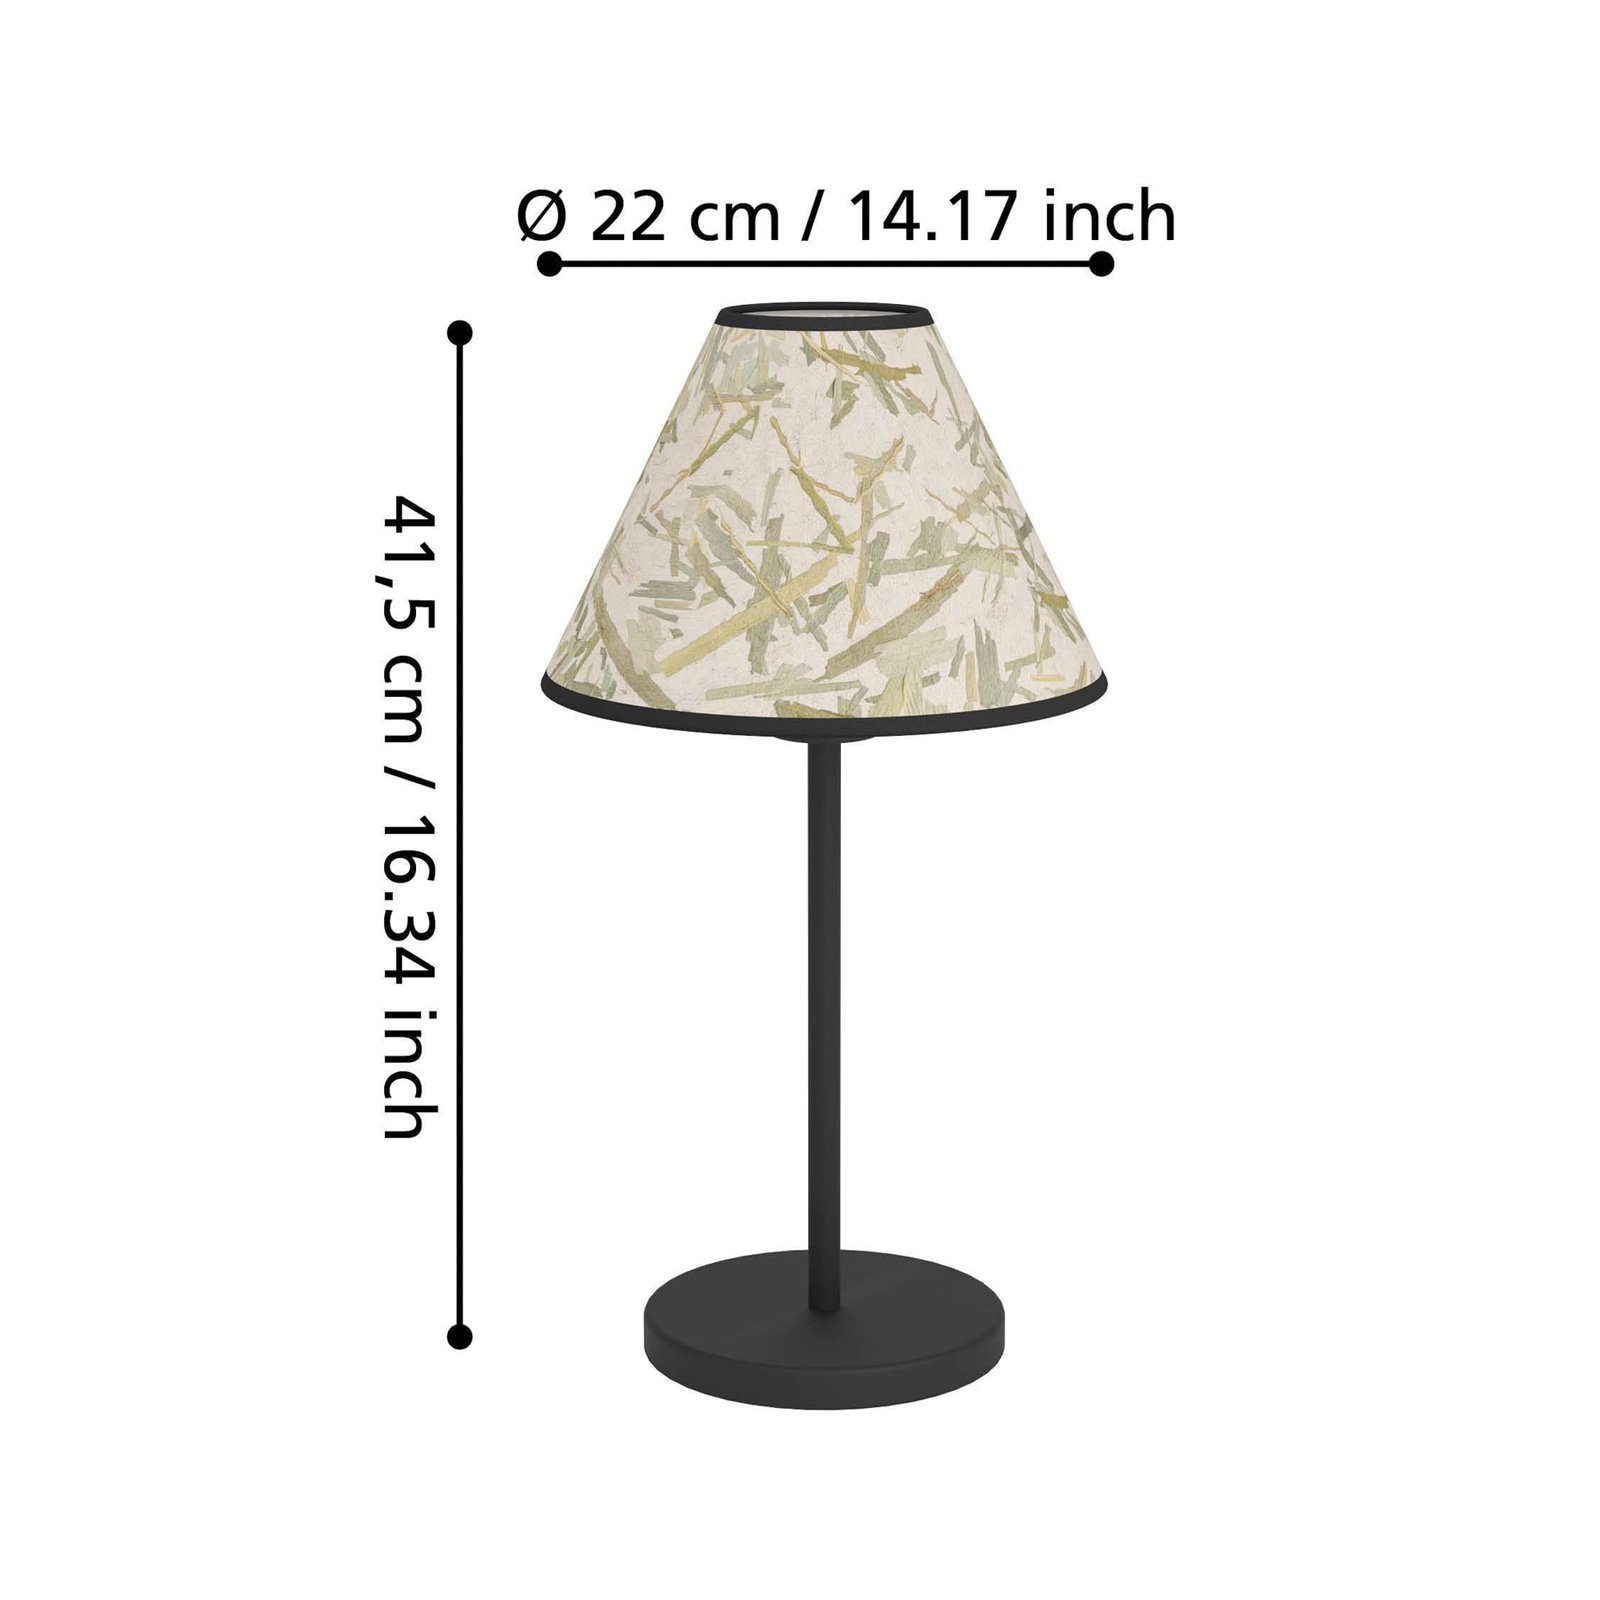 Oxpark bordlampe, høyde 41,5 cm, grønn/hvit/svart